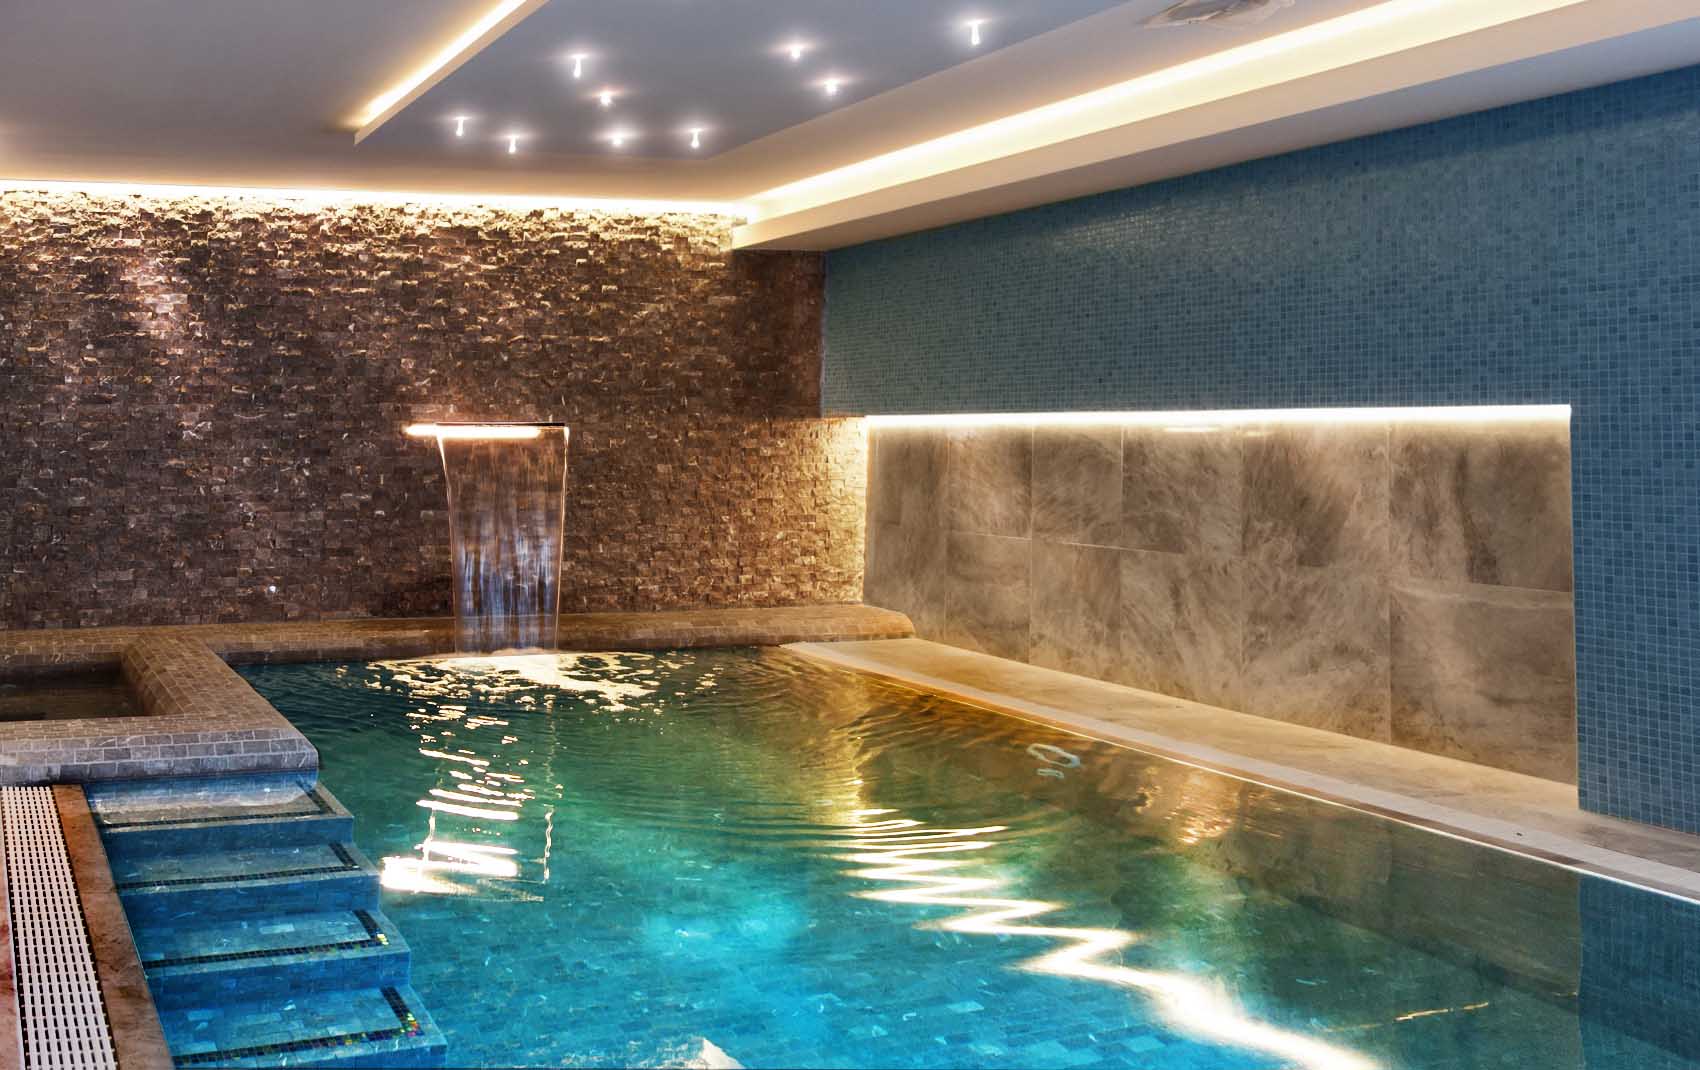 Cool pool, Rene Dekker design, glamour pool, waterfall, crystal spotlights